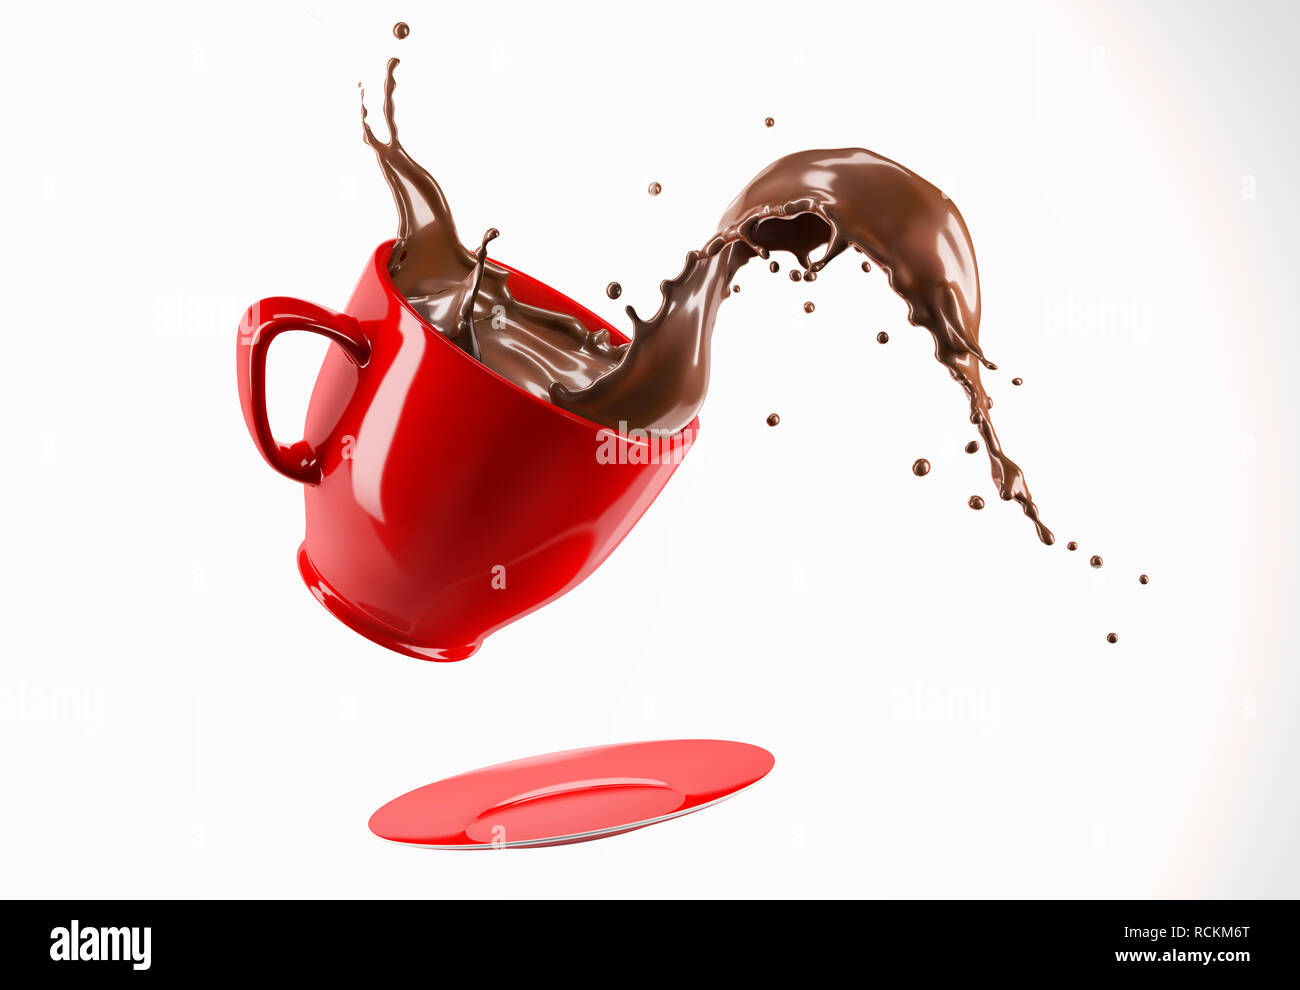 Red Porzellanbecher Tasse und Untertasse springen mit flüssiger Schokolade Wave splash. Auf weissem Hintergrund. Stockfoto